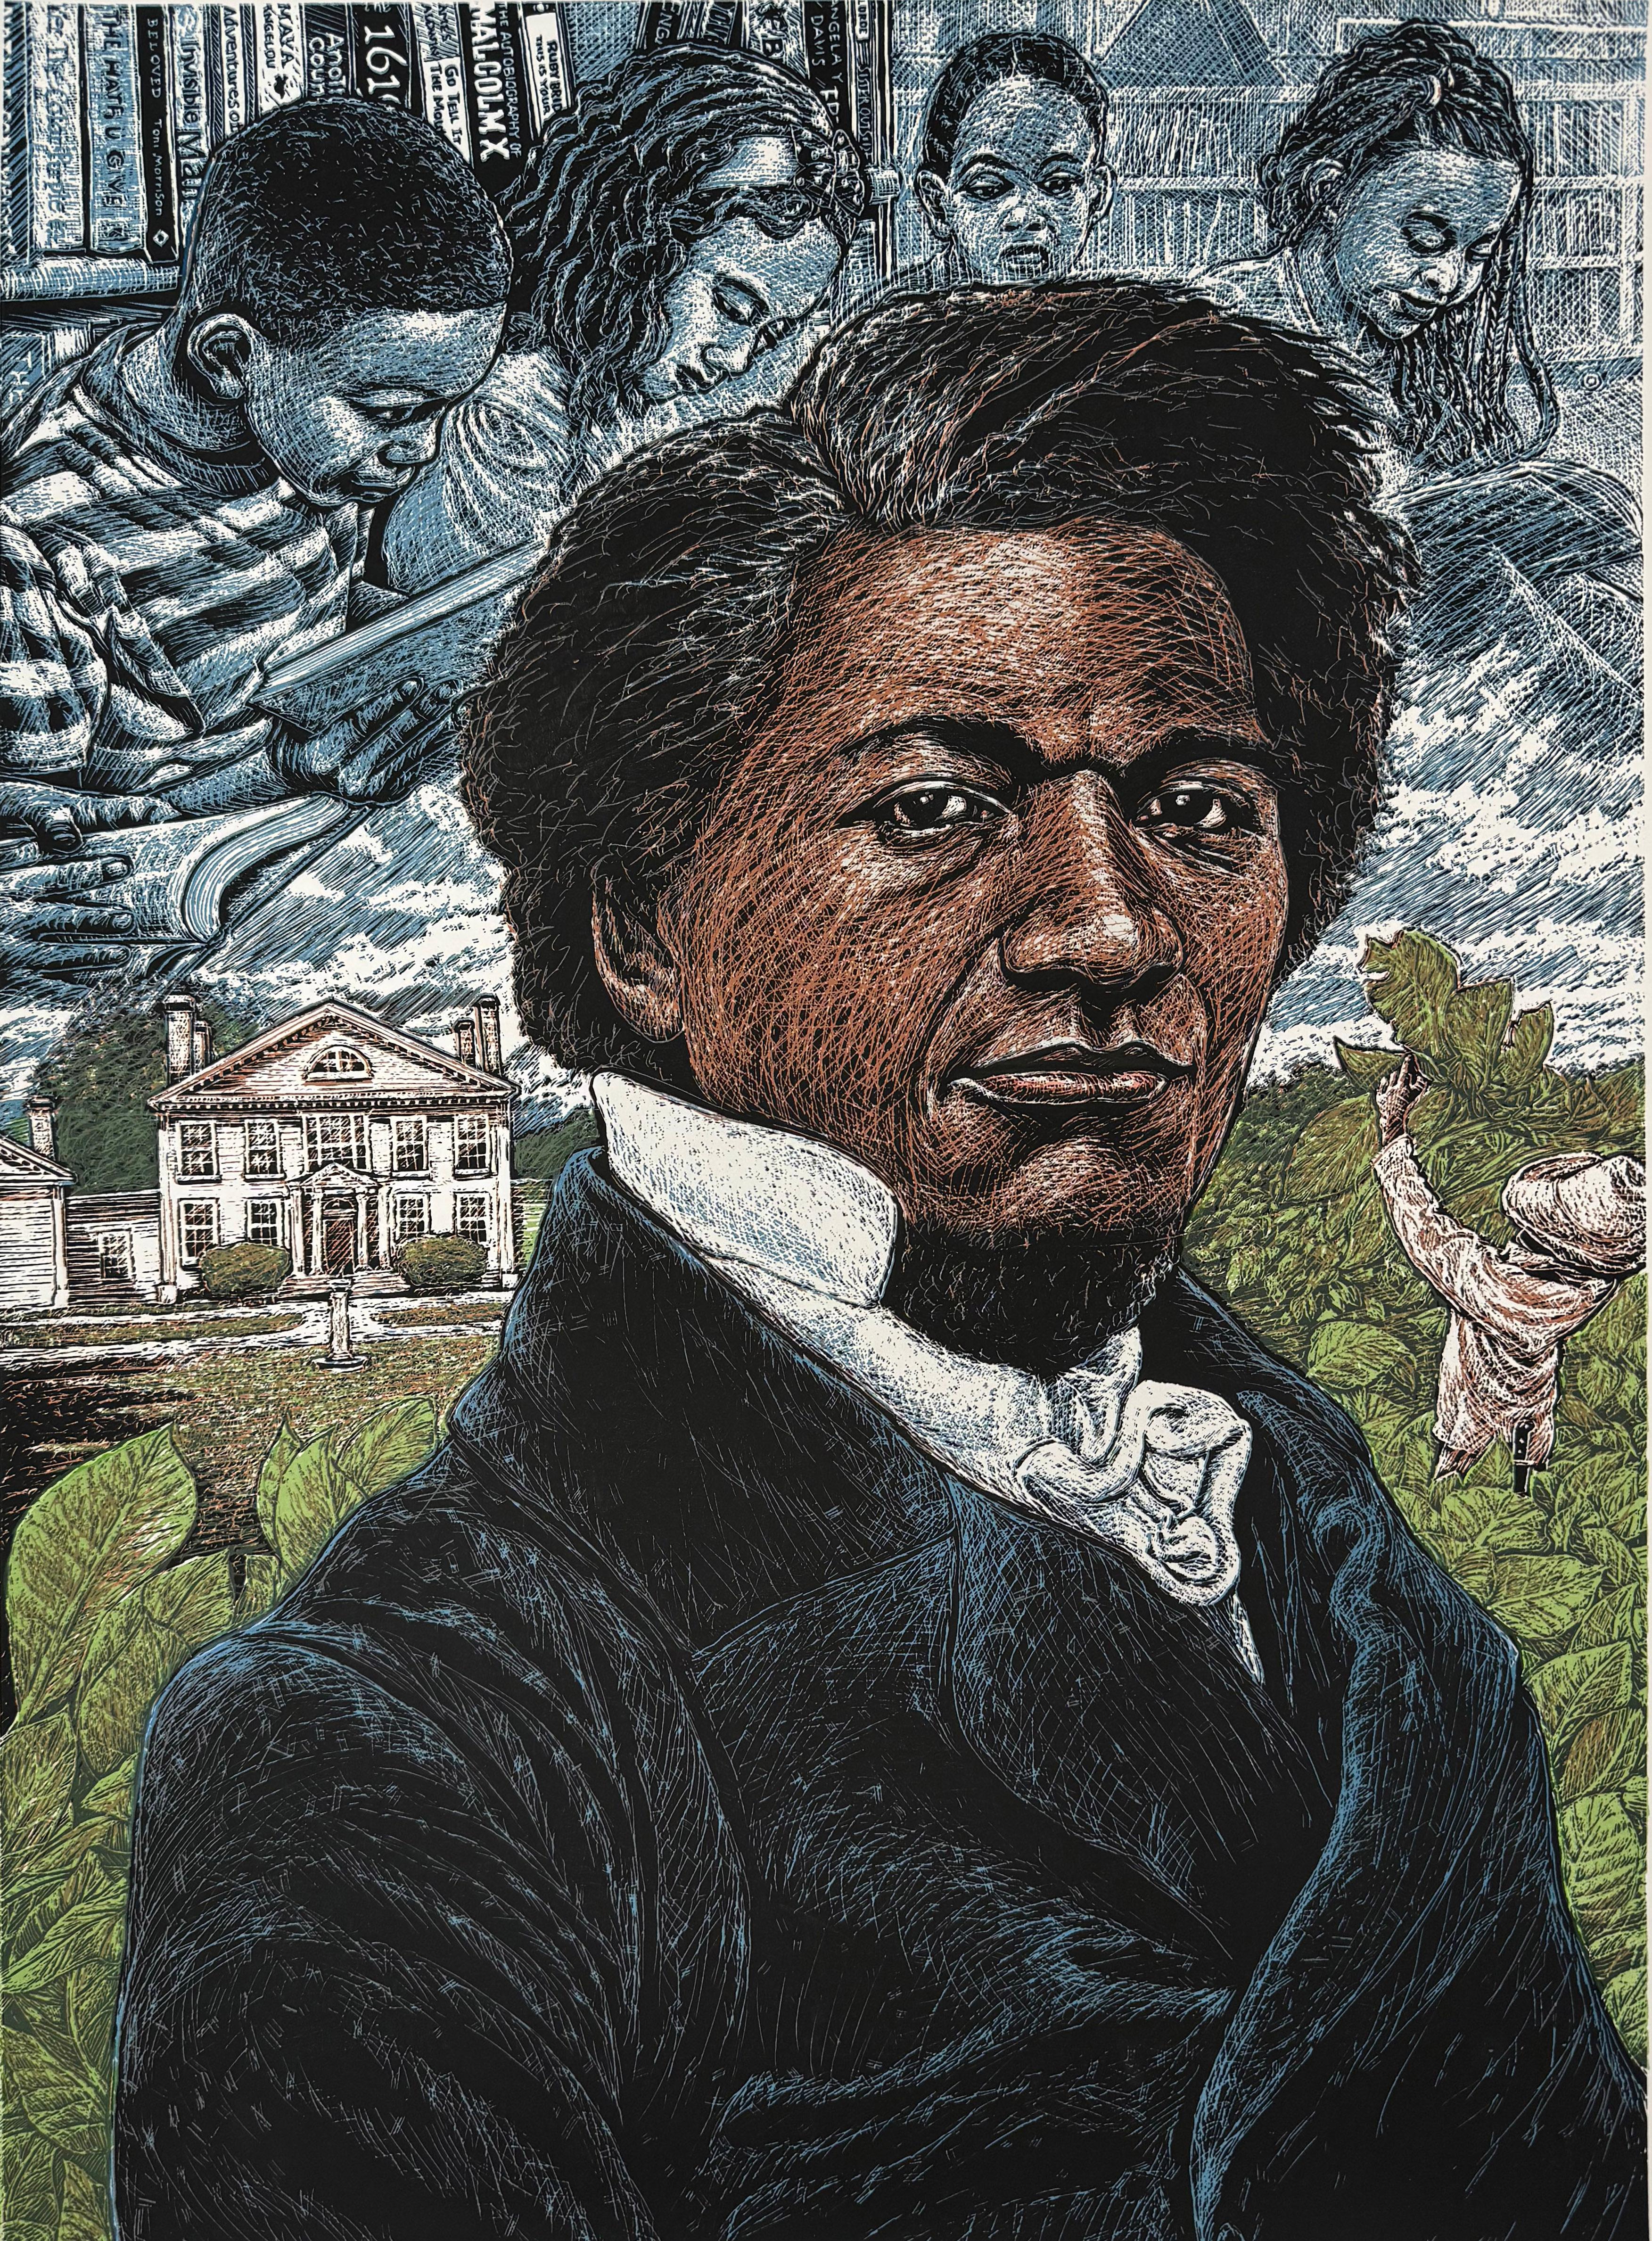 Porträt von Frederick Douglas. Als ehemaliger Sklave wurde er zu einem der berühmtesten Abolitionisten und einer der führenden Köpfe der afroamerikanischen Bürgerrechtsbewegung im 19. 

Medium: Siebdruck
Jahr: 2023
Bildgröße: 20 x 15